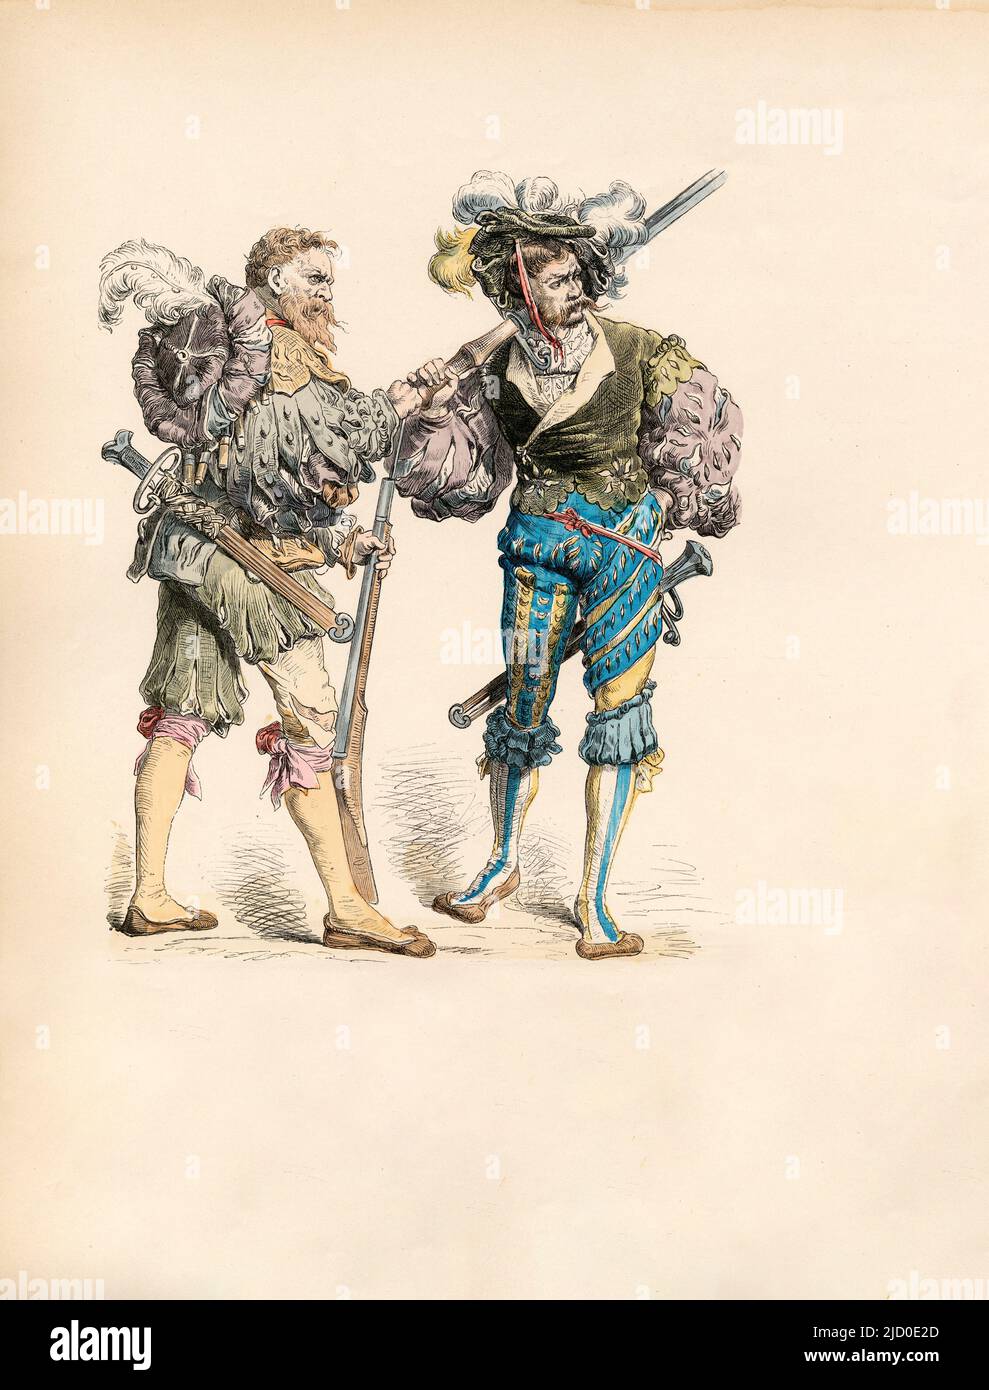 Soldiers, German Military Dress, primo terzo del XVI secolo, Illustrazione, la Storia del Costume, Braun & Schneider, Monaco di Baviera, Germania, 1861-1880 Foto Stock